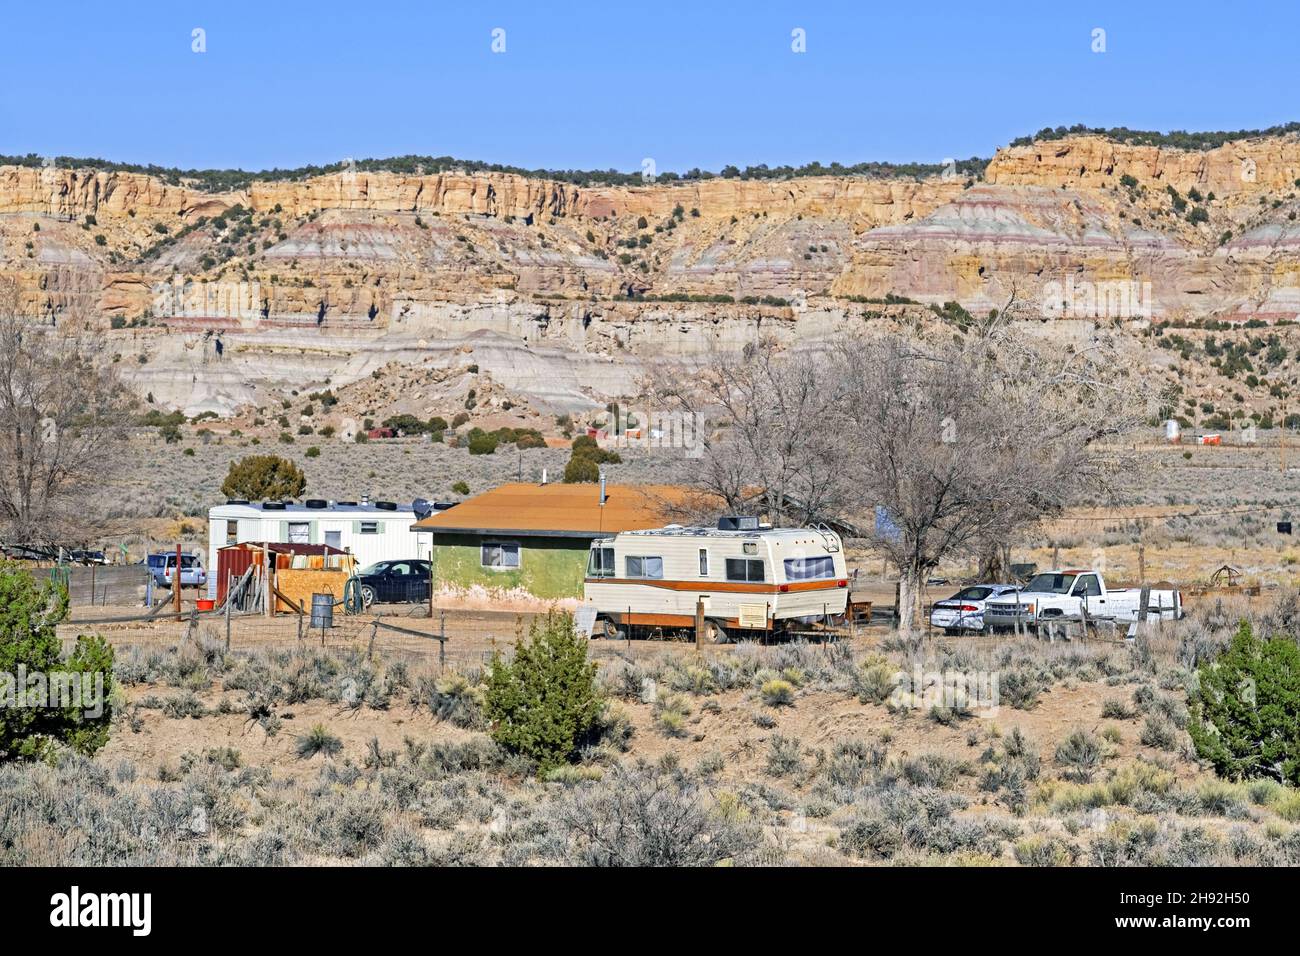 Homestead / mobil home / trailer home / trailer de casa en la Nación Navajo, territorio nativo americano en Nuevo México, Estados Unidos / Estados Unidos Foto de stock